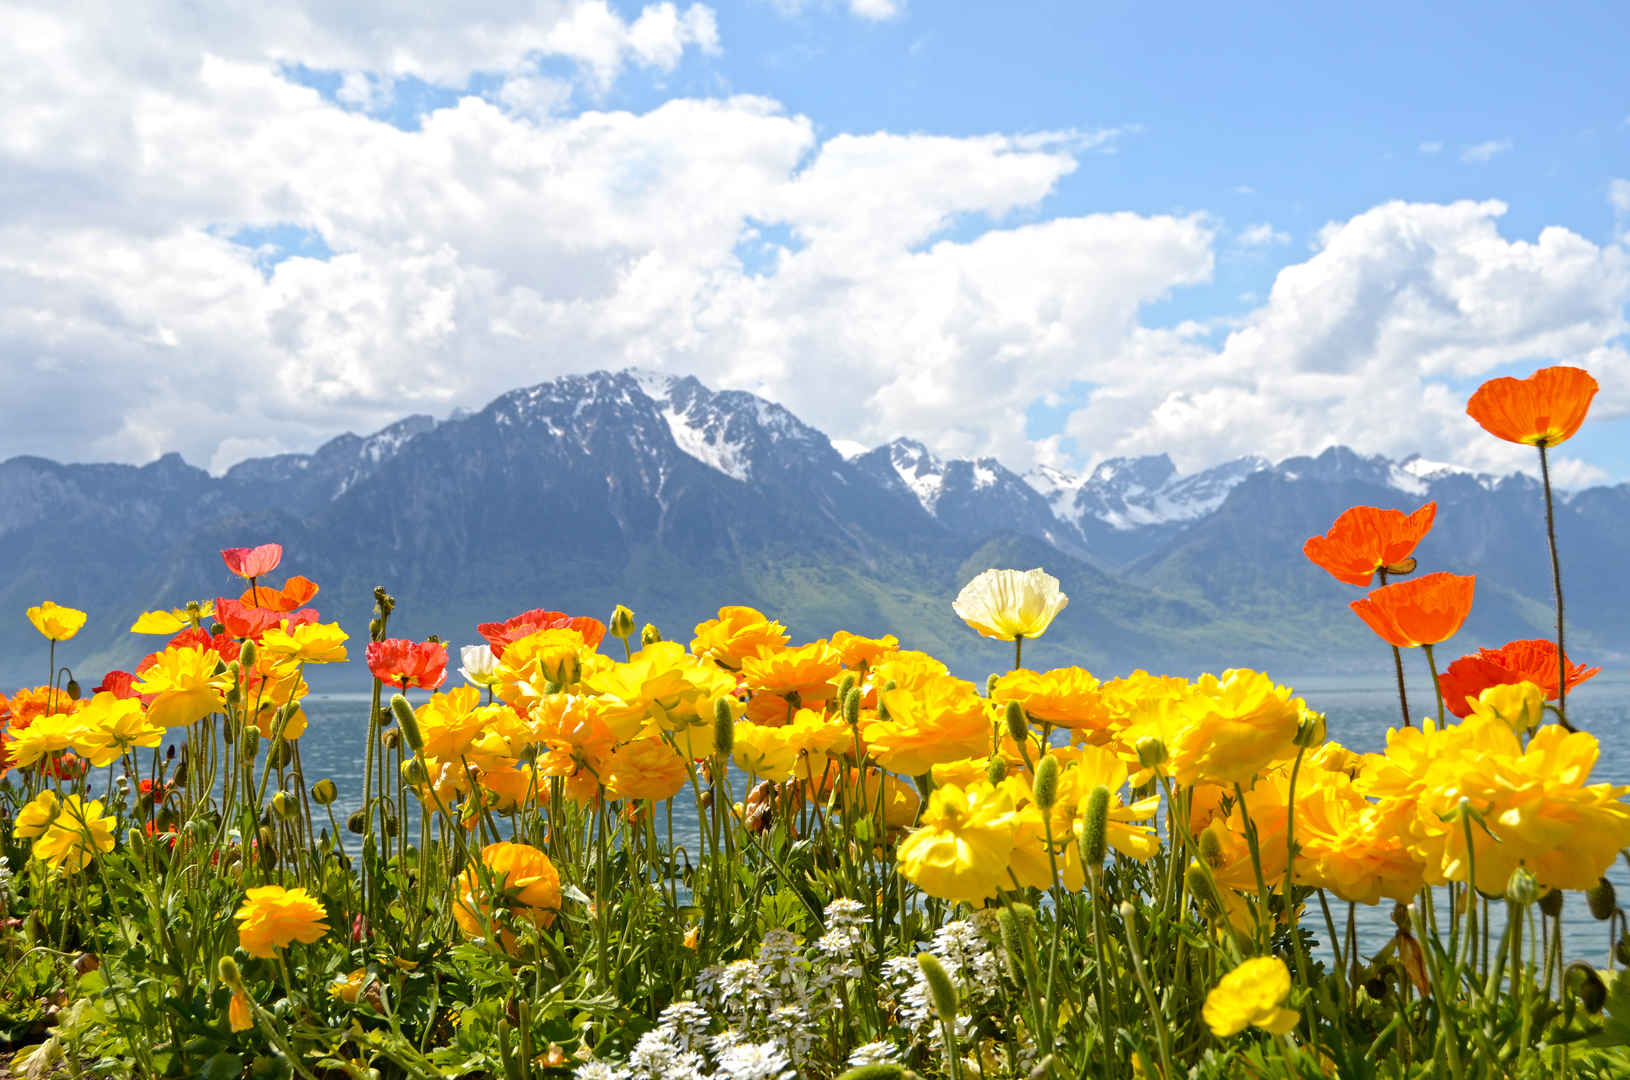 蒙特勒日内瓦湖的鲜花瑞士壁纸-